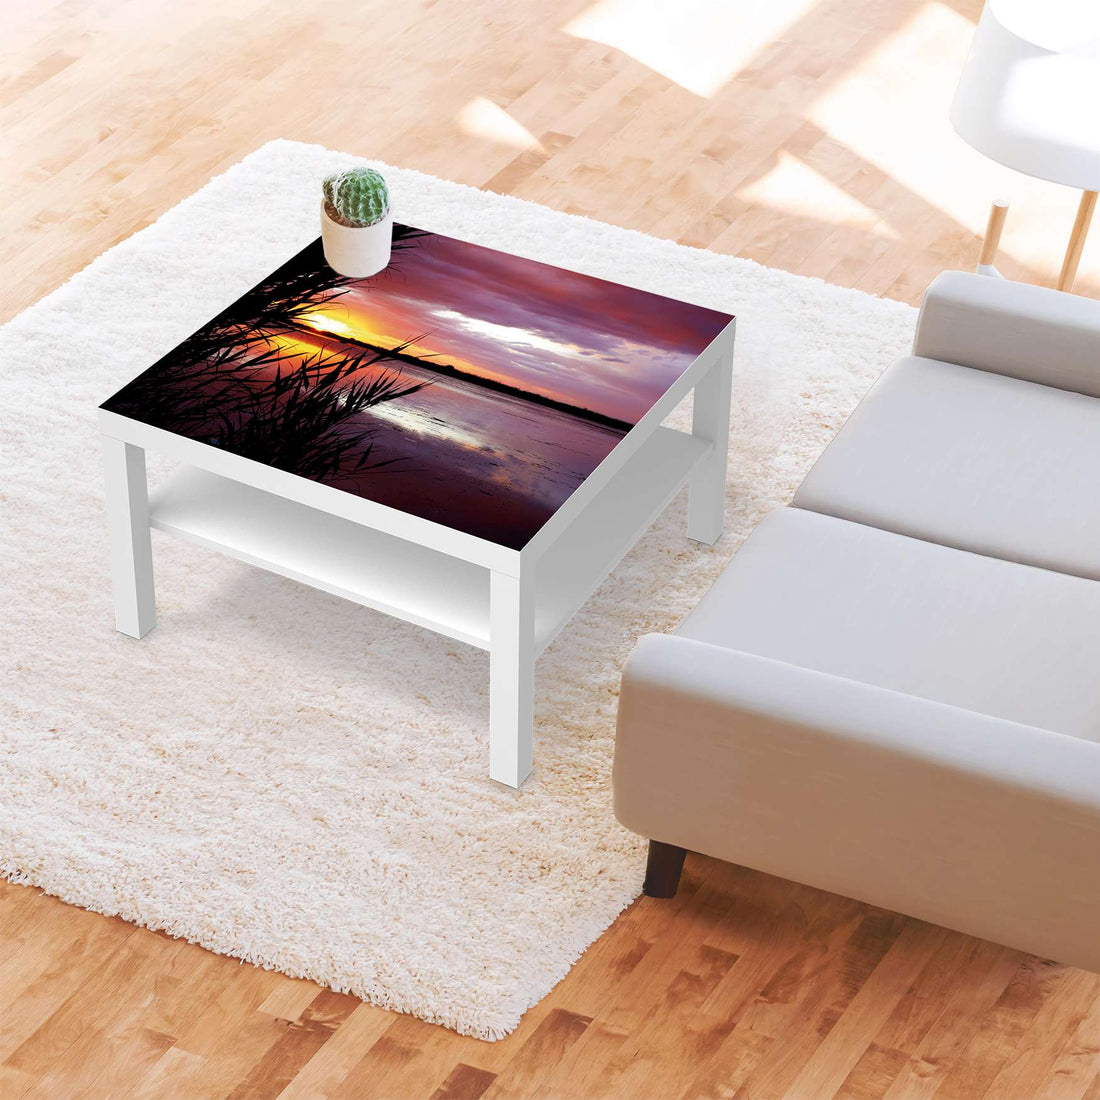 Selbstklebende Folie Dream away - IKEA Lack Tisch 78x78 cm - Wohnzimmer